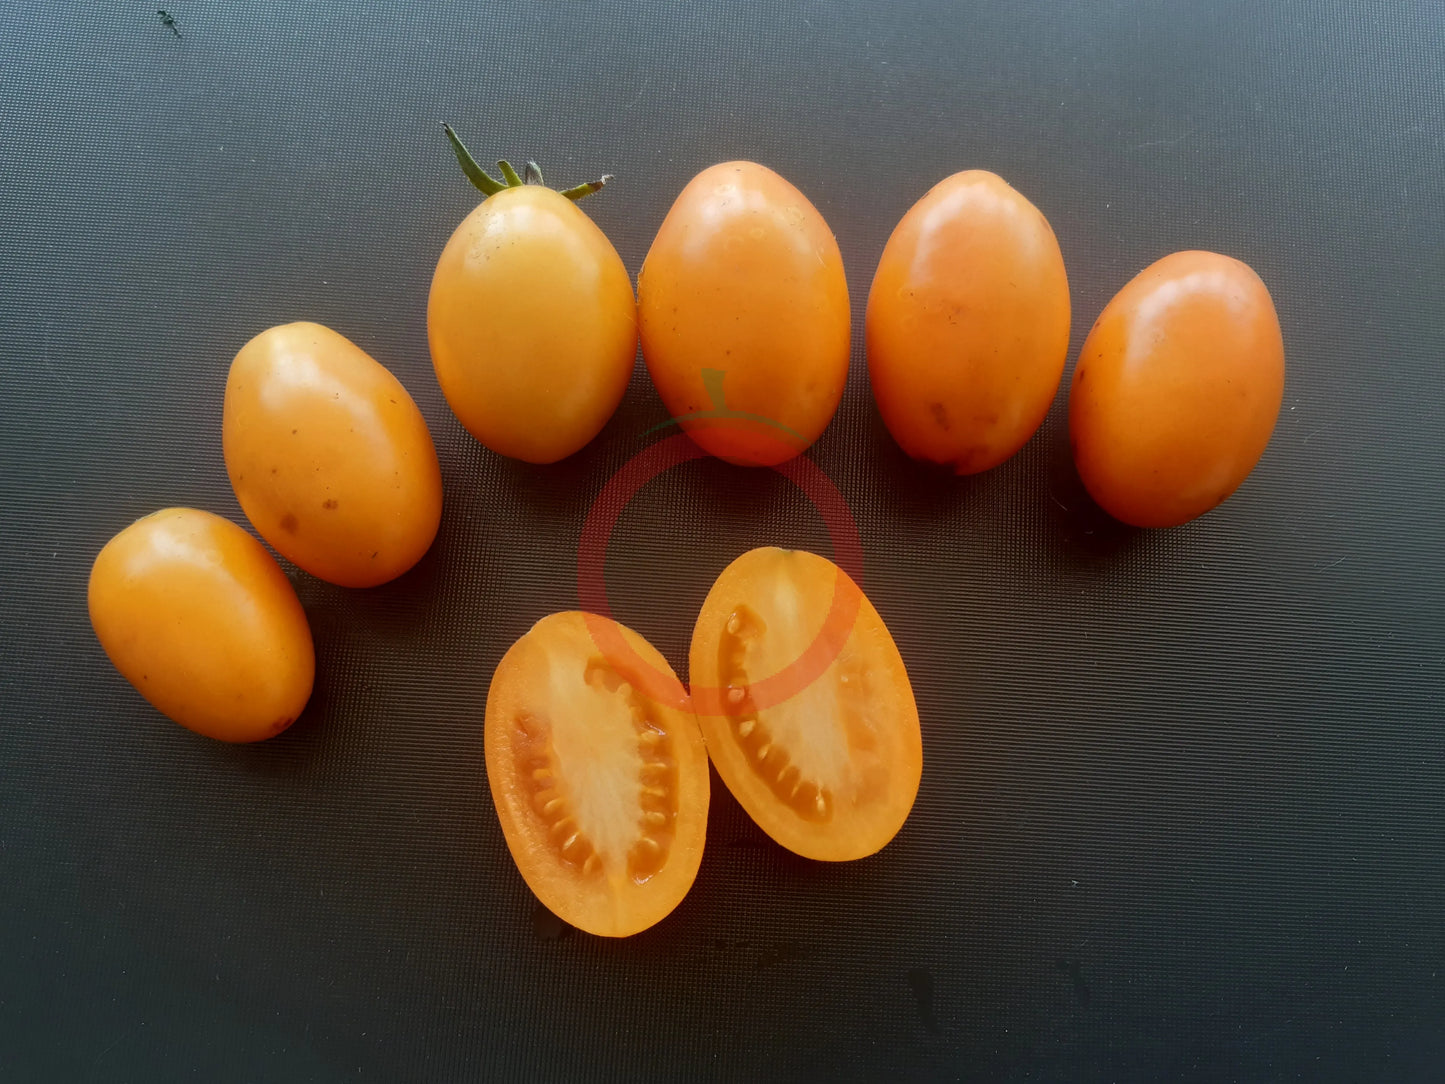 Tomate aus Ameis DER TOMATENFLÜSTERER